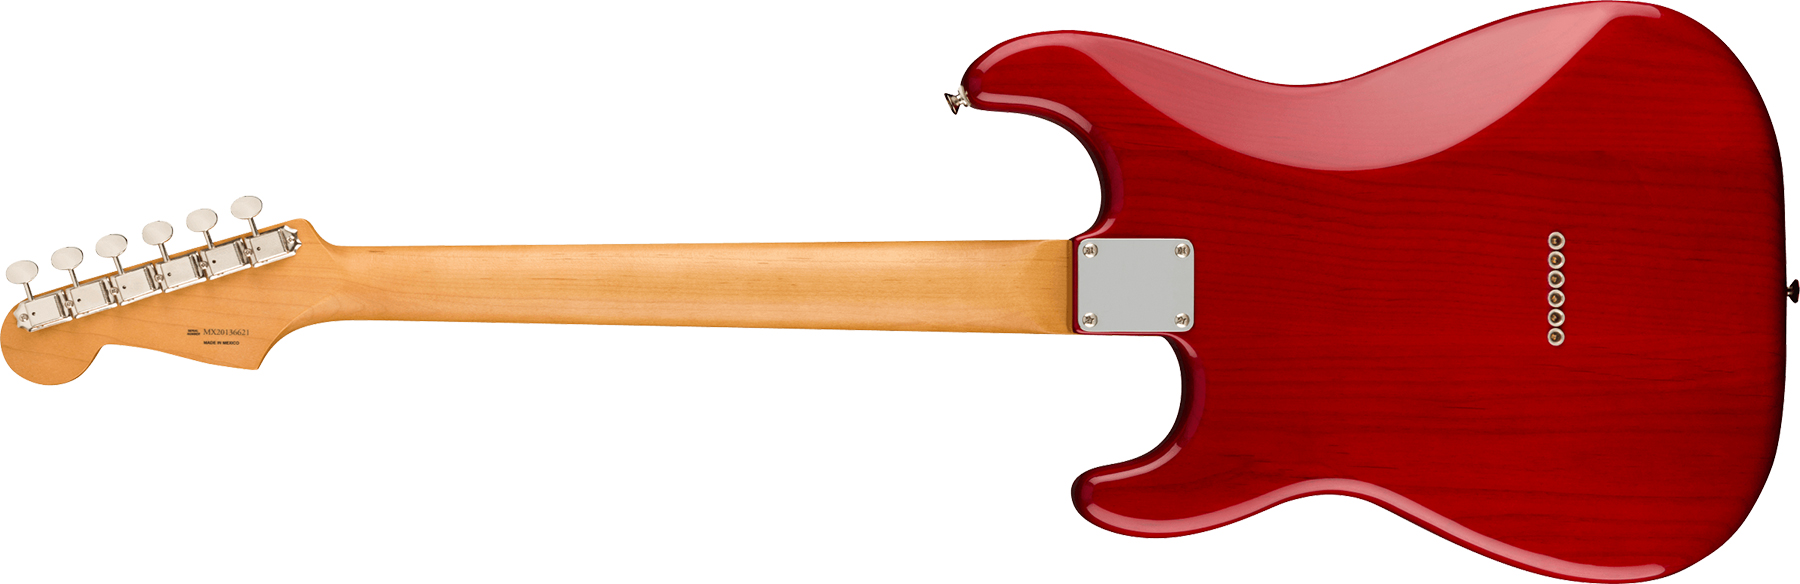 Fender Strat Noventa Mex Ss Ht Pf +housse - Crimson Red Transparent - Str shape electric guitar - Variation 1